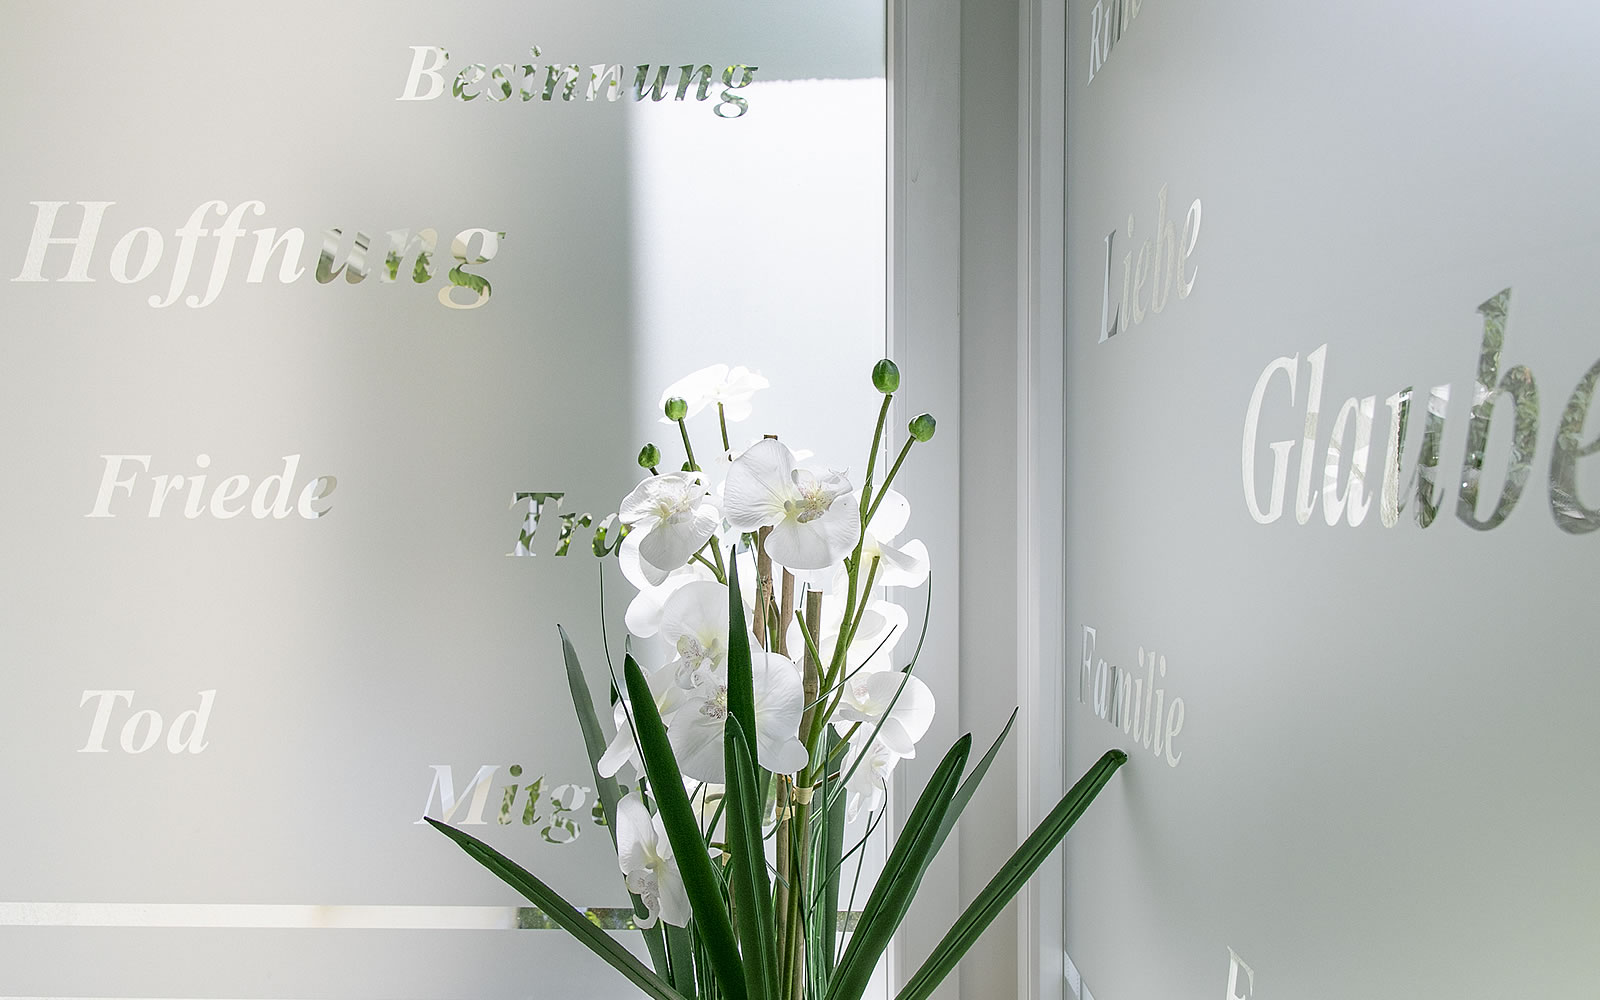 Glaswand mit Trauersprüchen, davor eine Pflanze mit edlen, weißen Blüten 